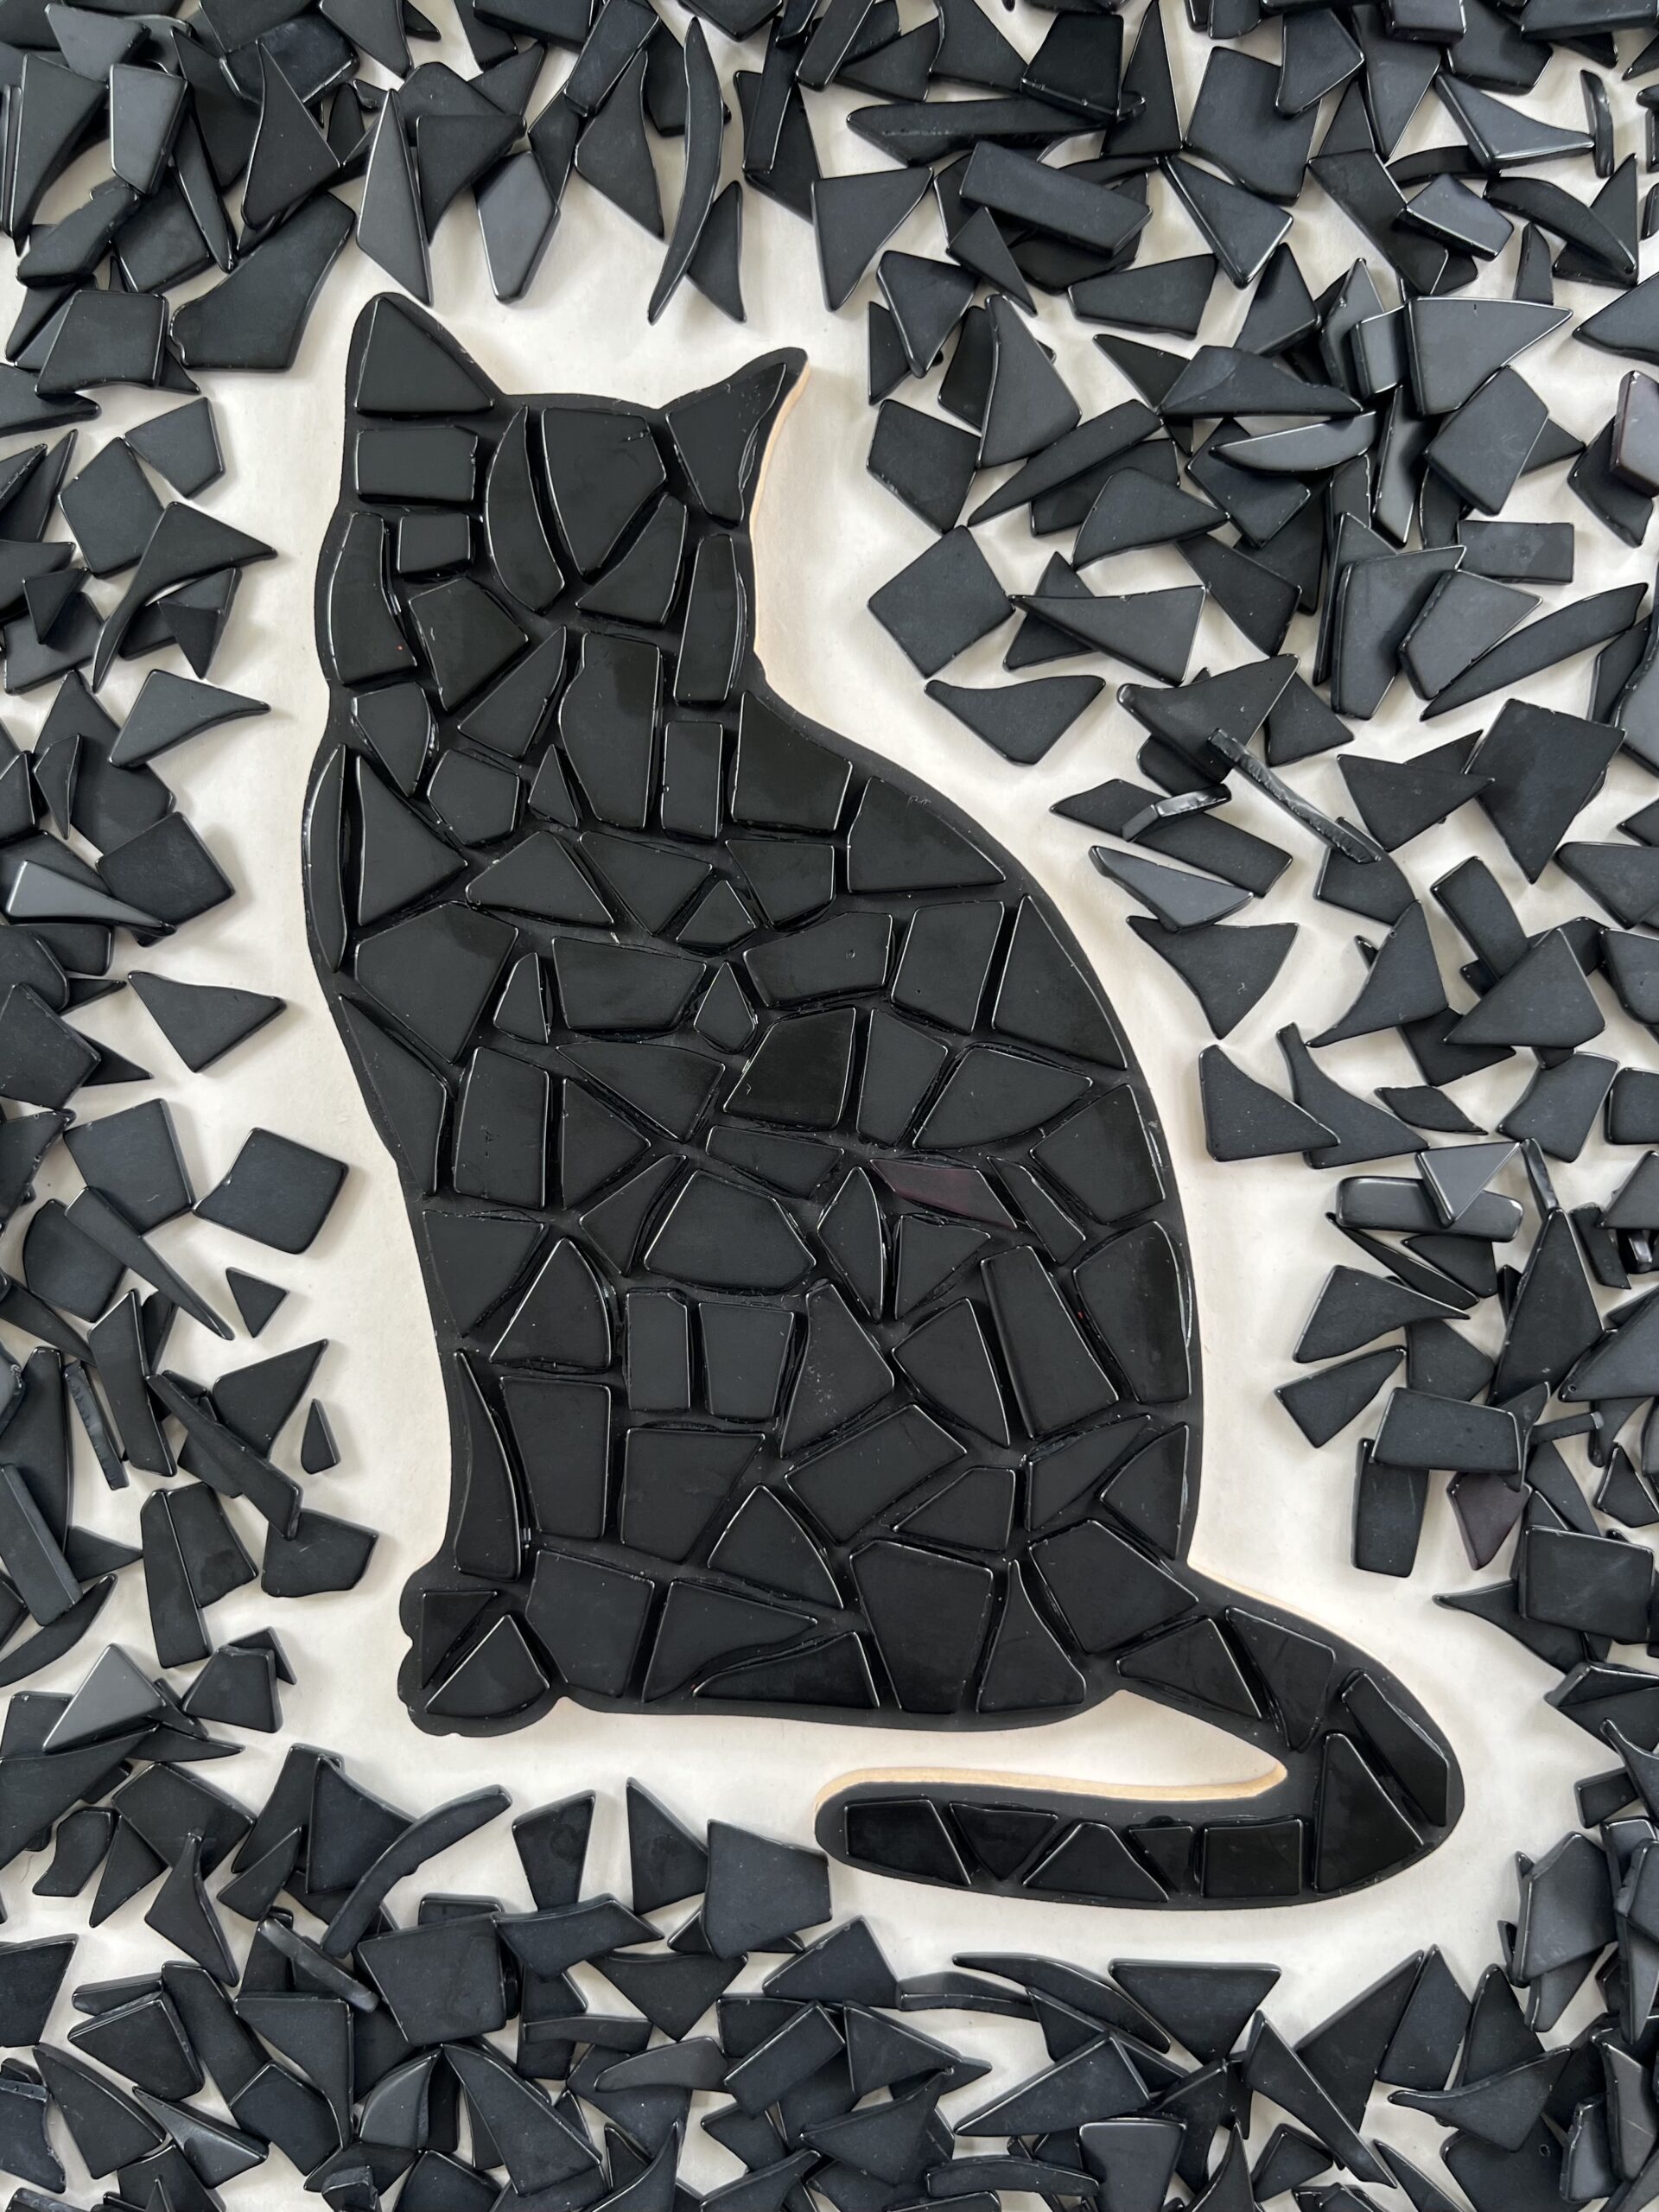 Mosaic Cats Class